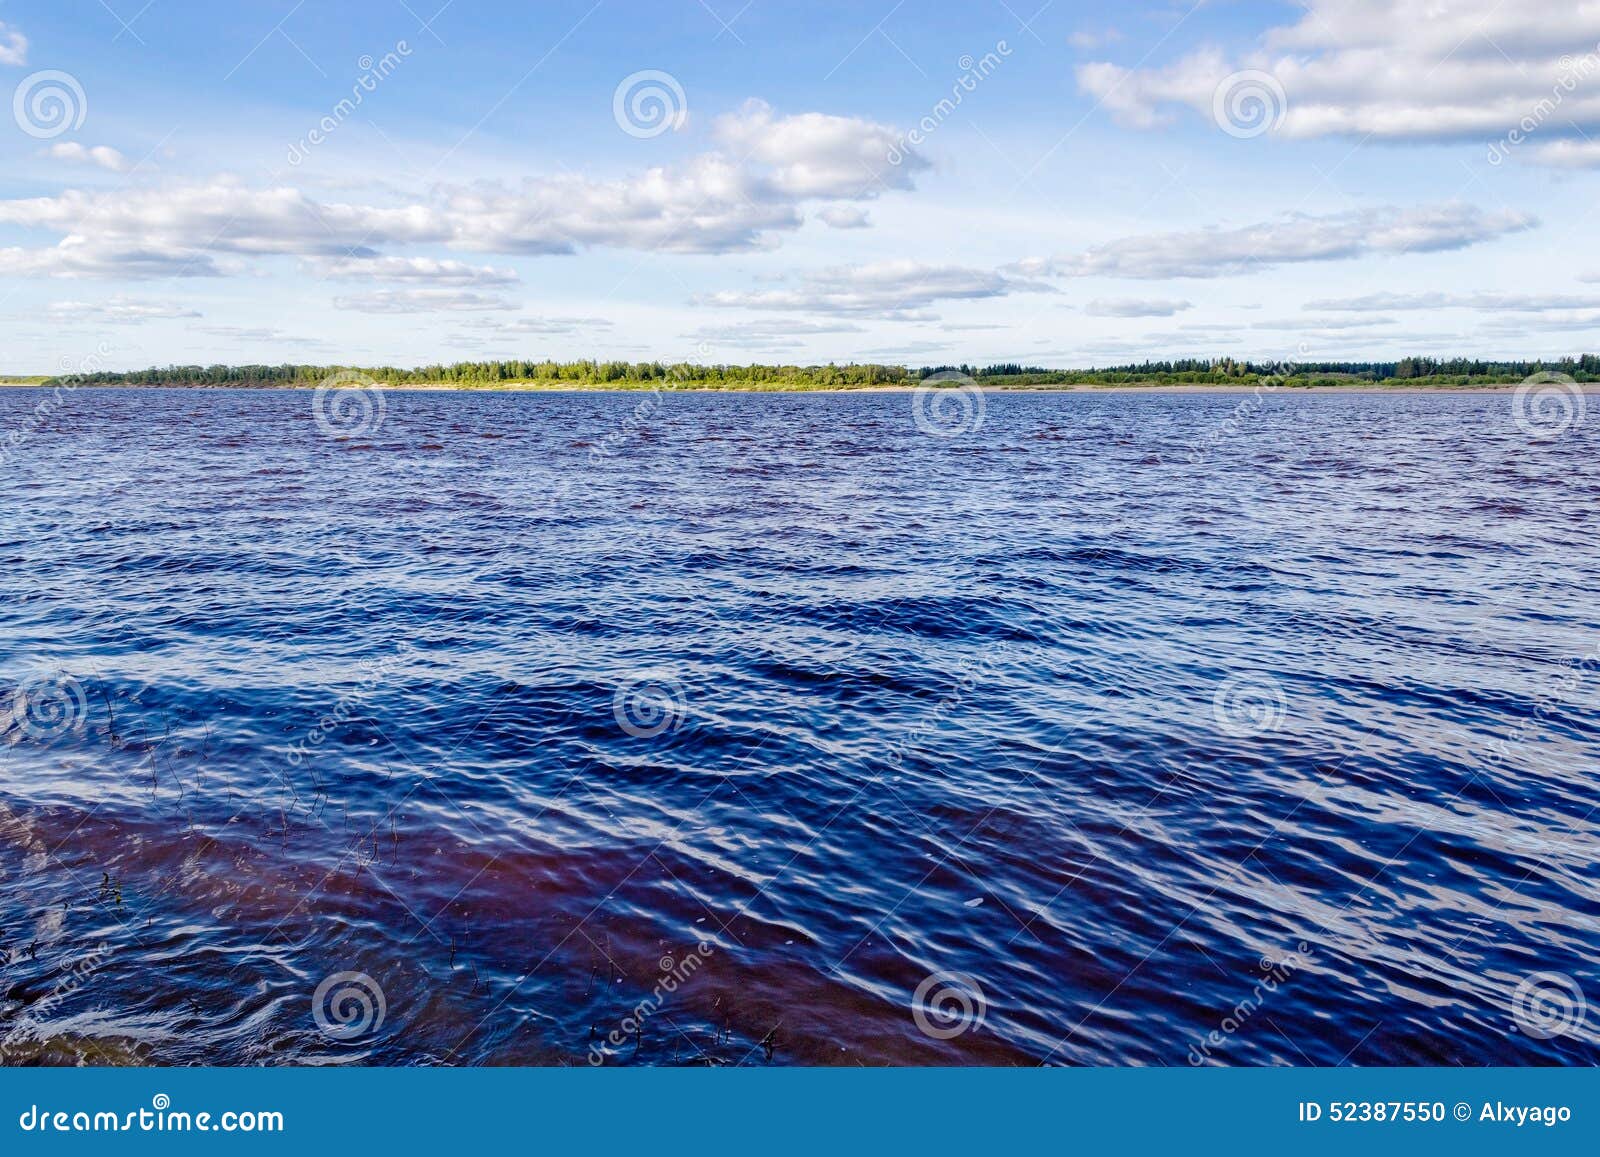 Площадь бассейна северной двины. Северная Двина и белое море. Северная Двина Архангельск. Северная Двина река в белое море. Северная Двина впадает в белое море.